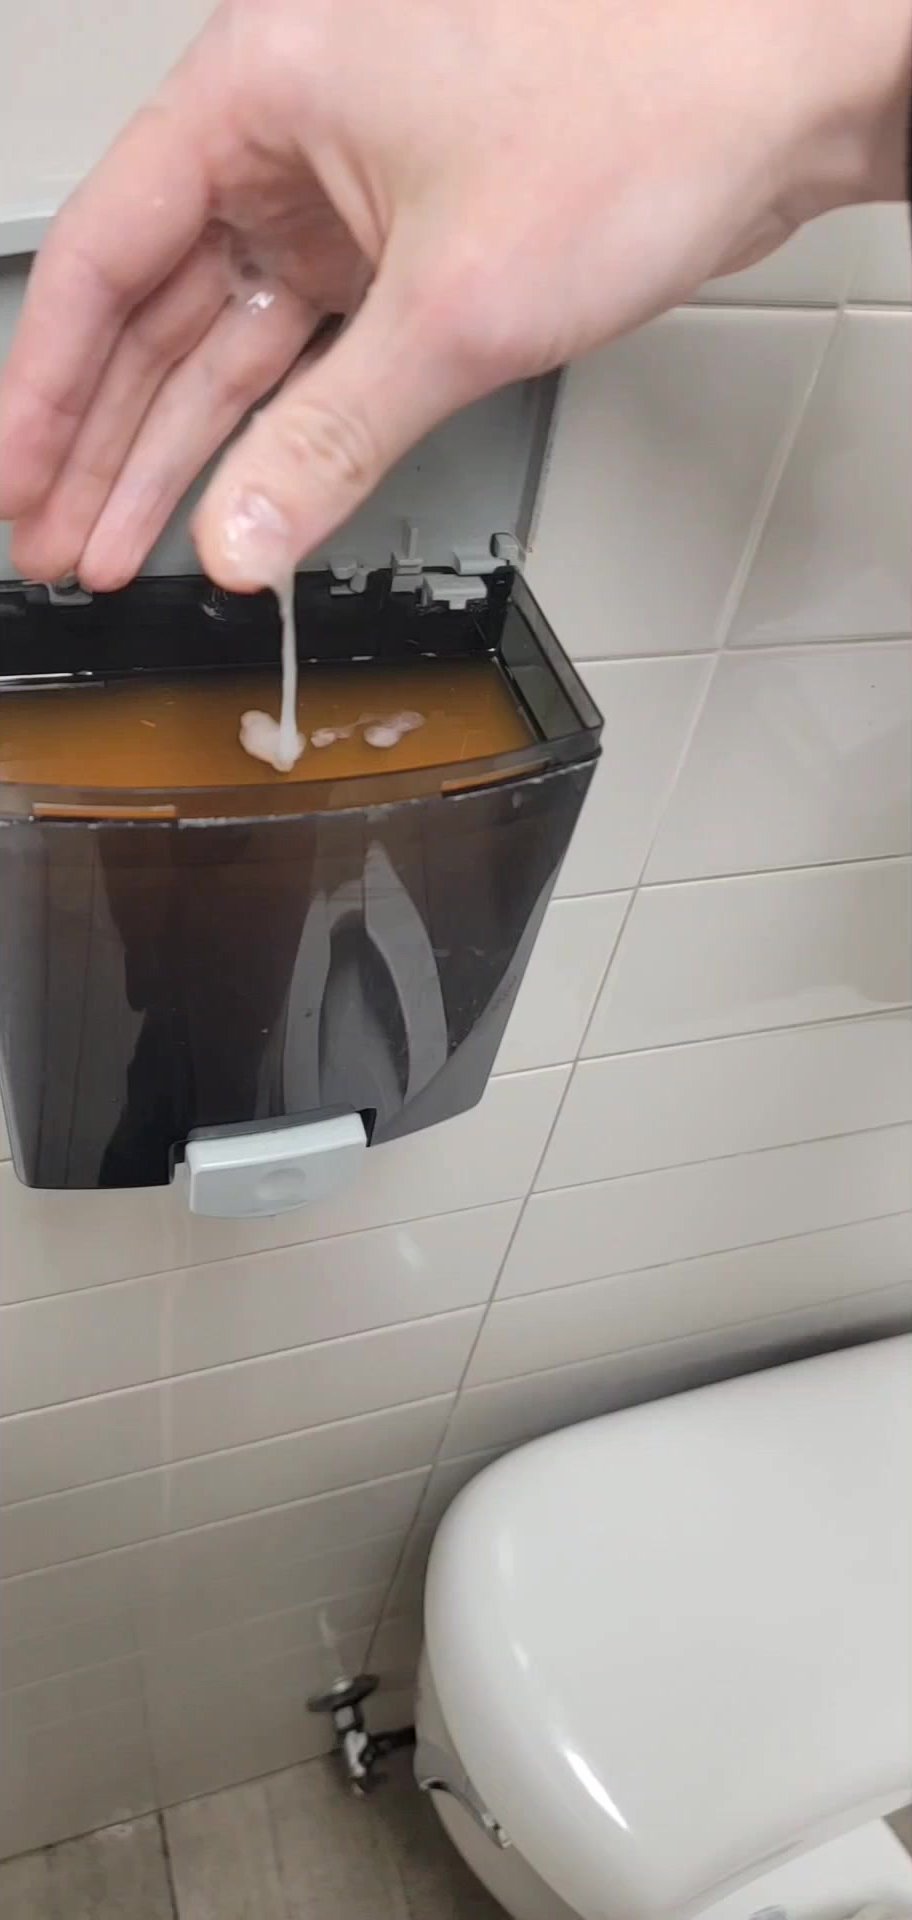 Piss and Cum in soap dispensers